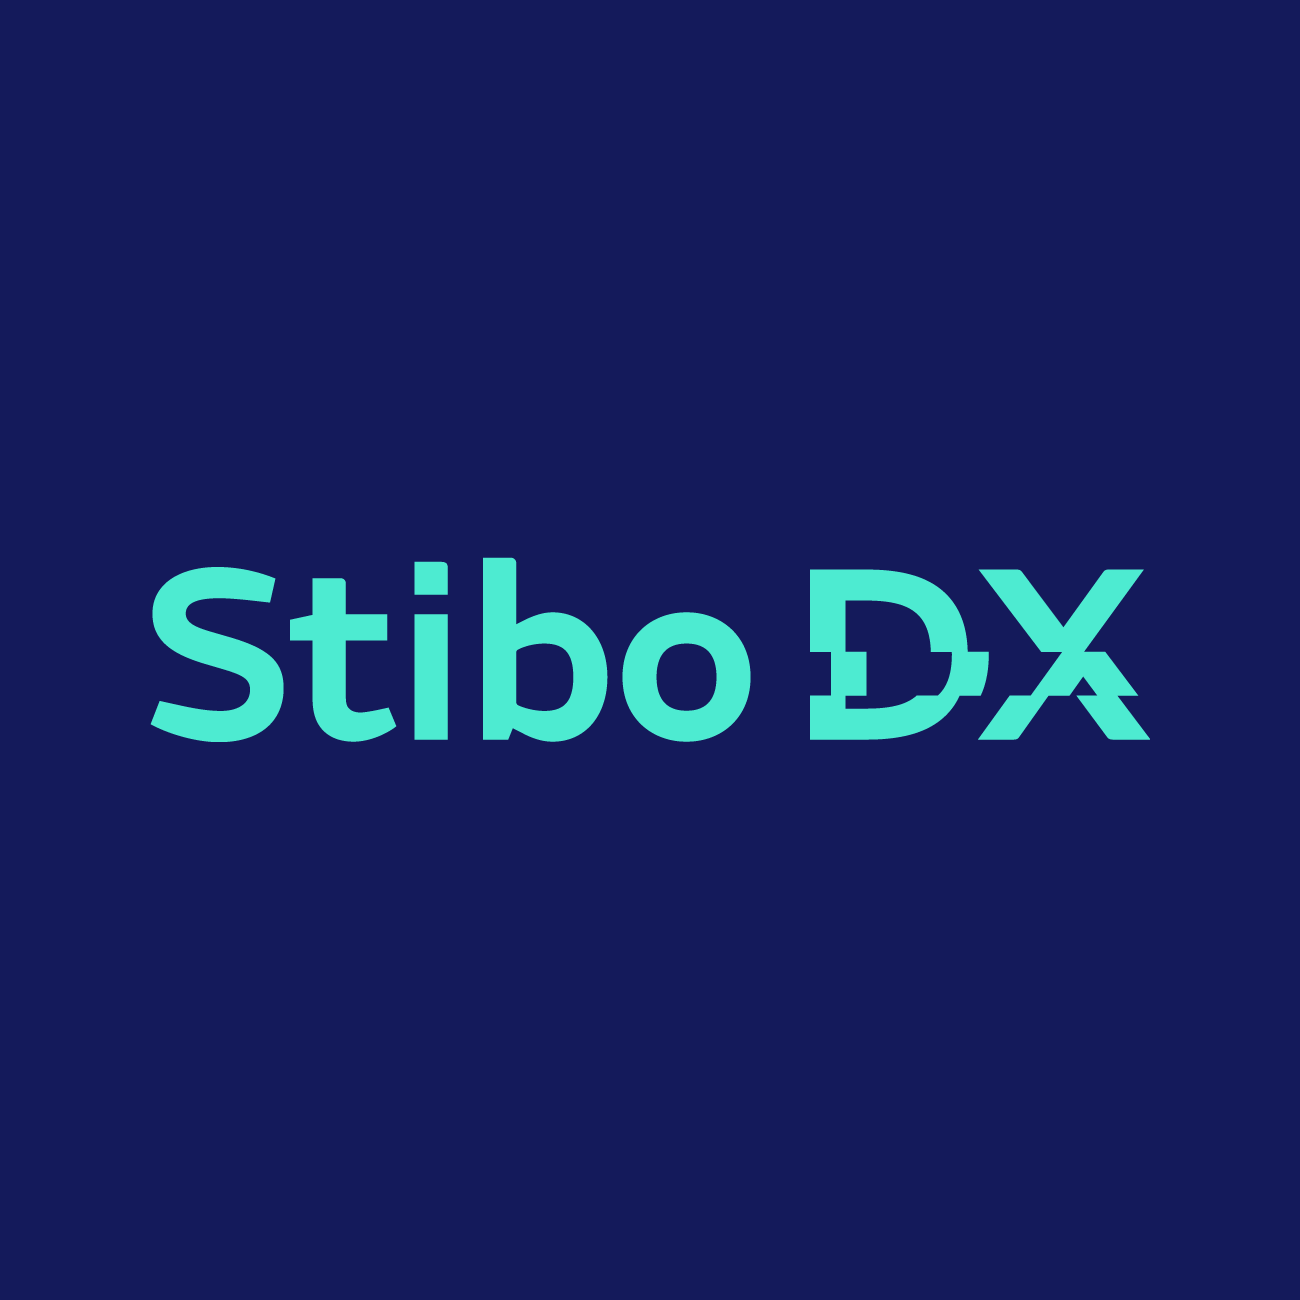 Stibo DX